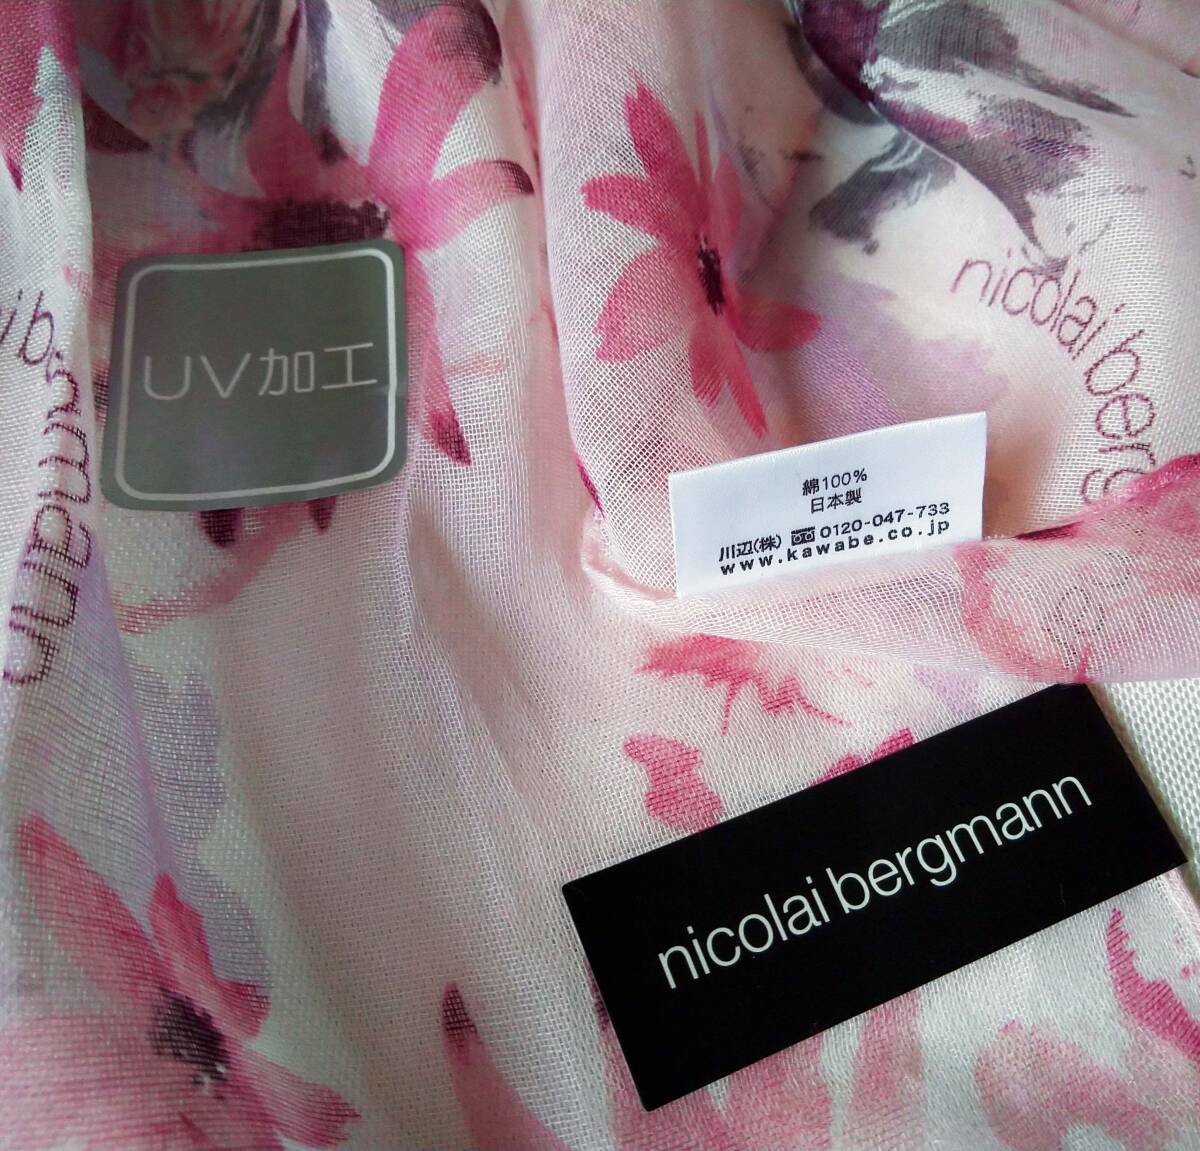  Nicola i Burgman! новый товар розовый серия . цветок & Logo рисунок UV хлопок палантин 